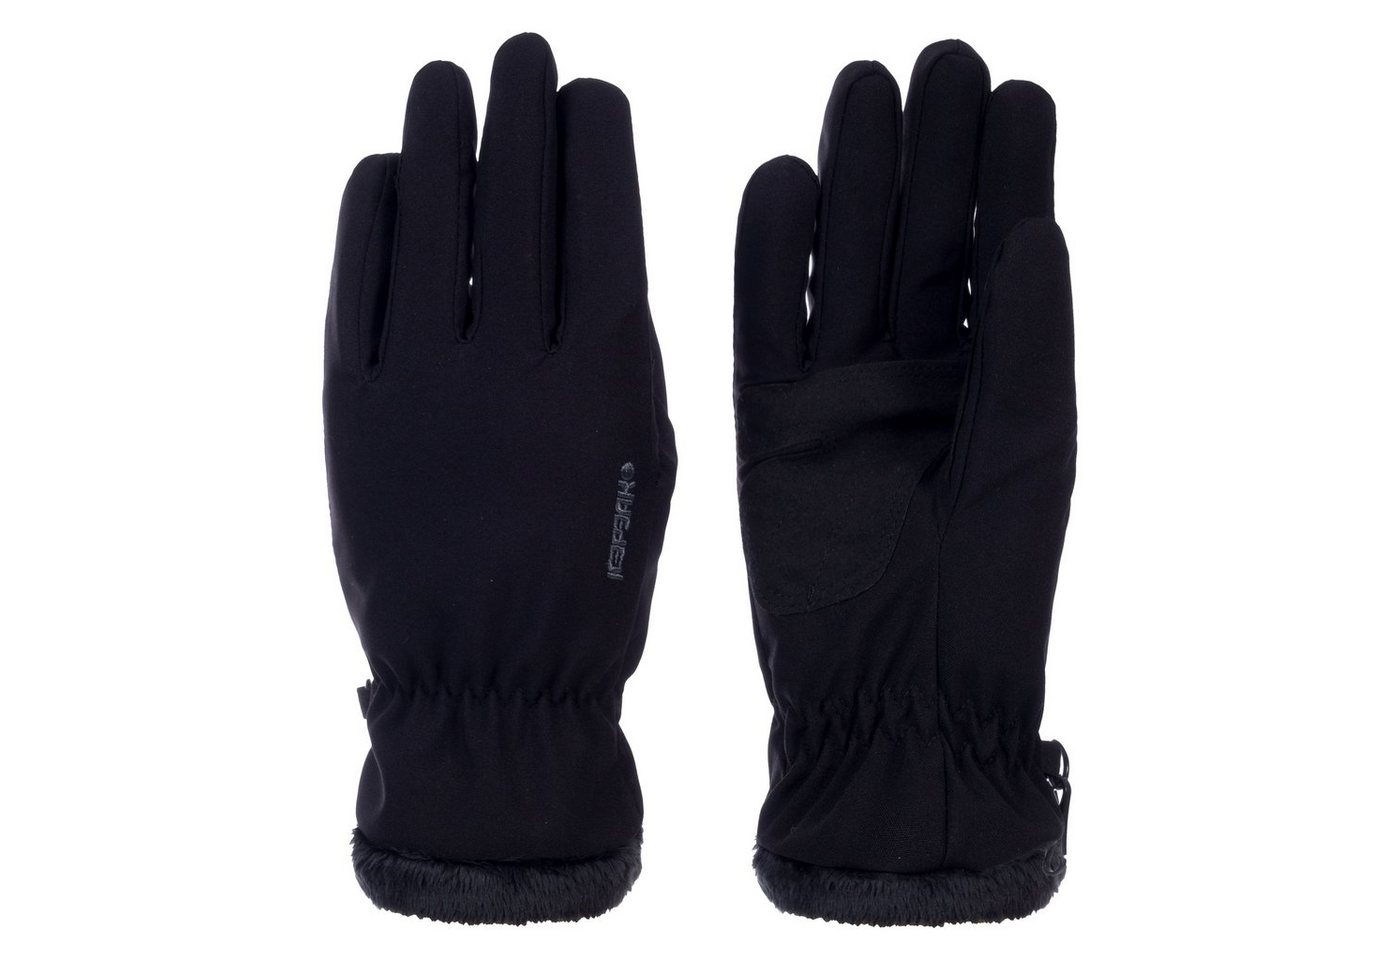 Icepeak Multisporthandschuhe Glove Woman Hanau black von Icepeak